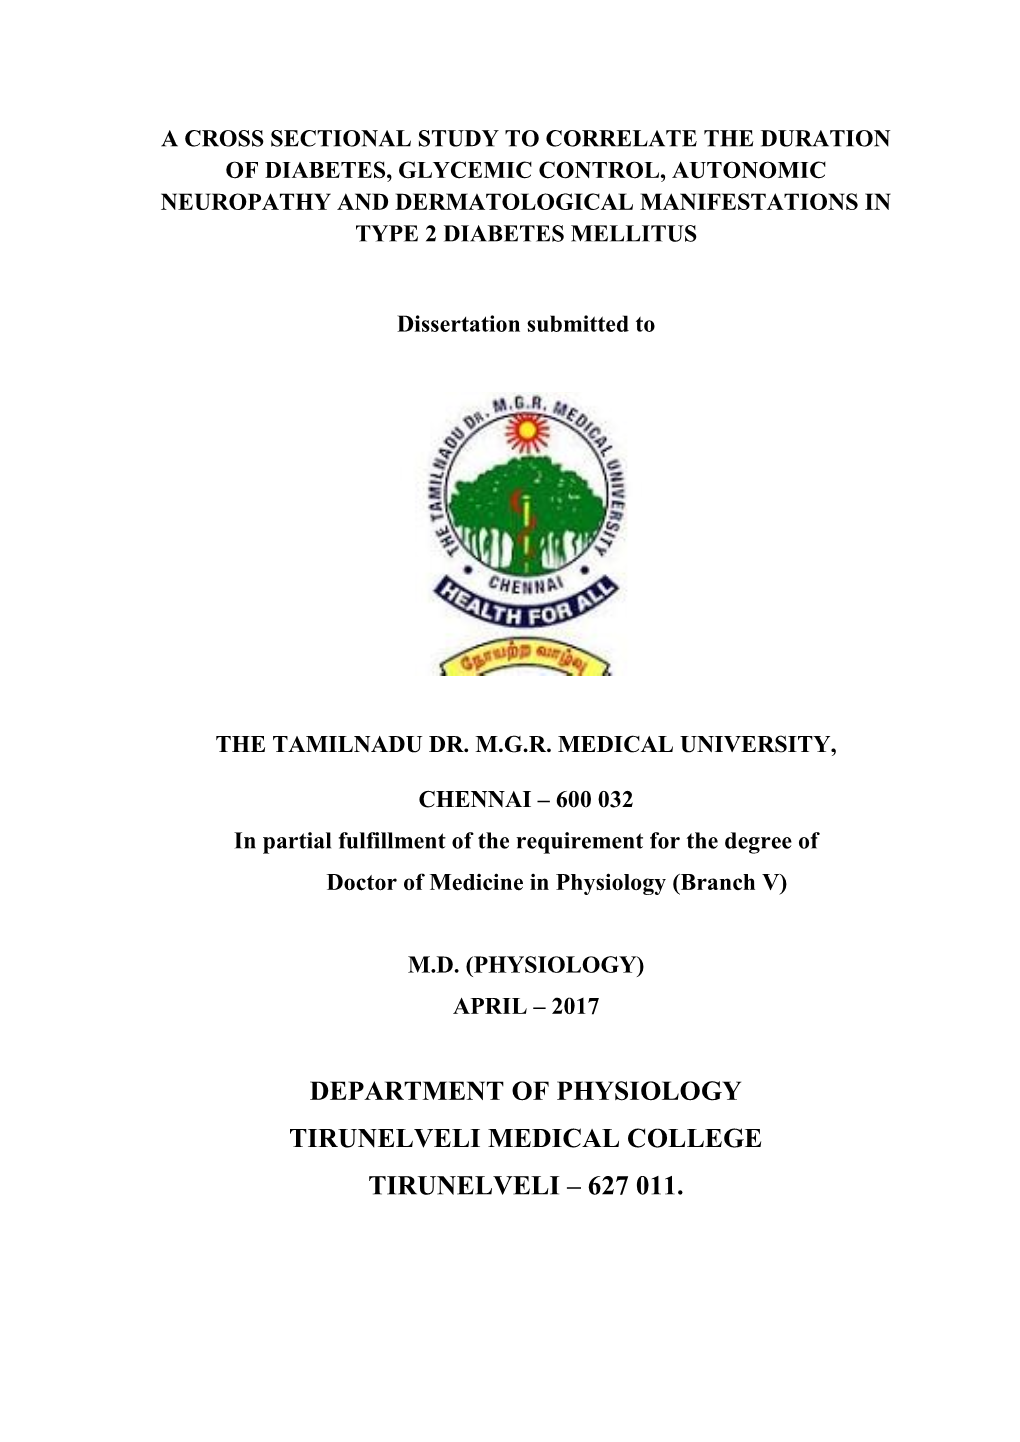 Department of Physiology Tirunelveli Medical College Tirunelveli – 627 011